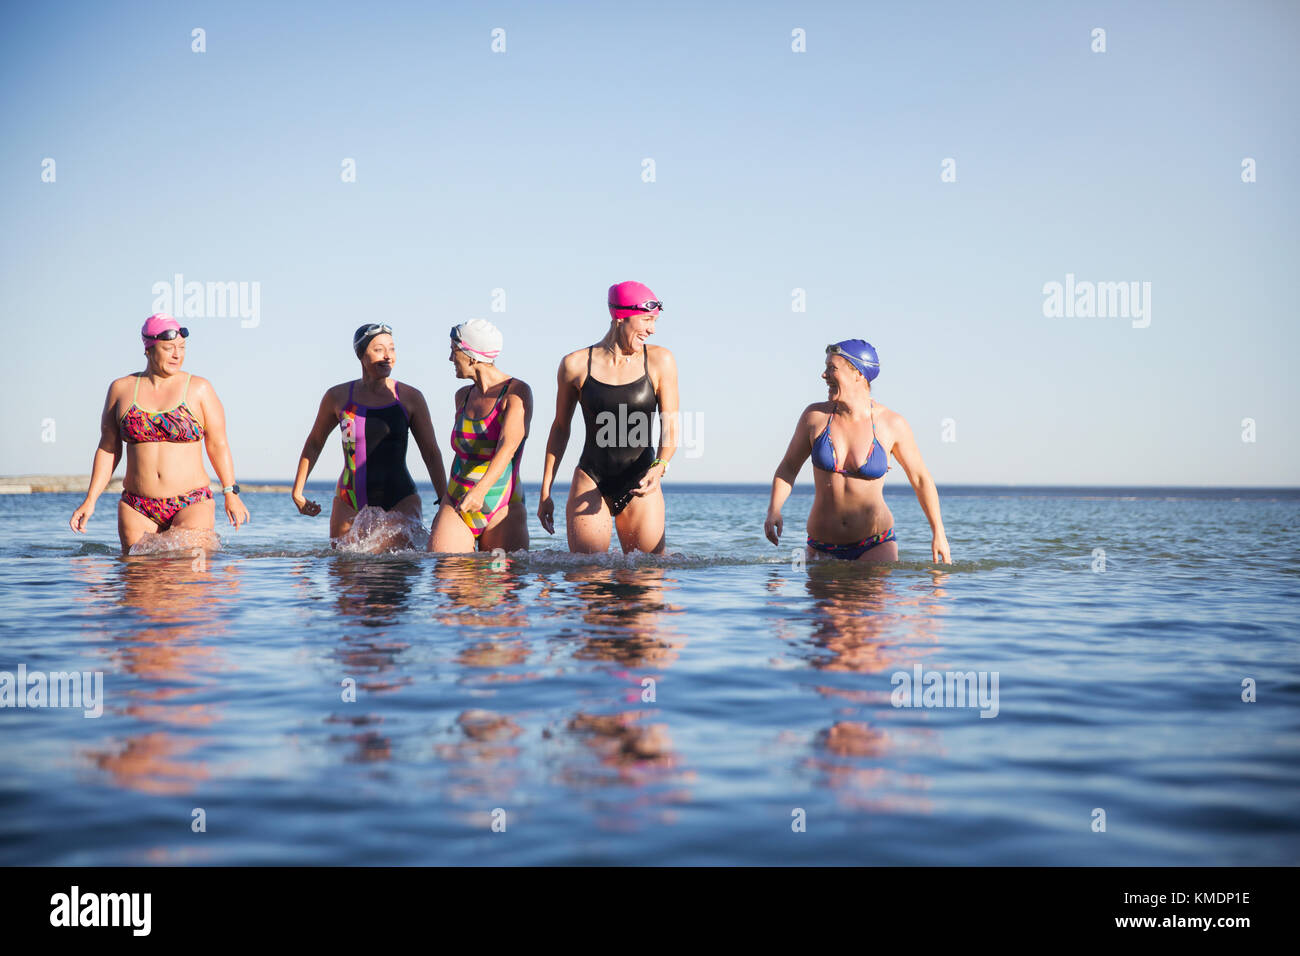 Weibliche Schwimmer im offenen Wasser, die im sonnigen Meer waten Stockfoto